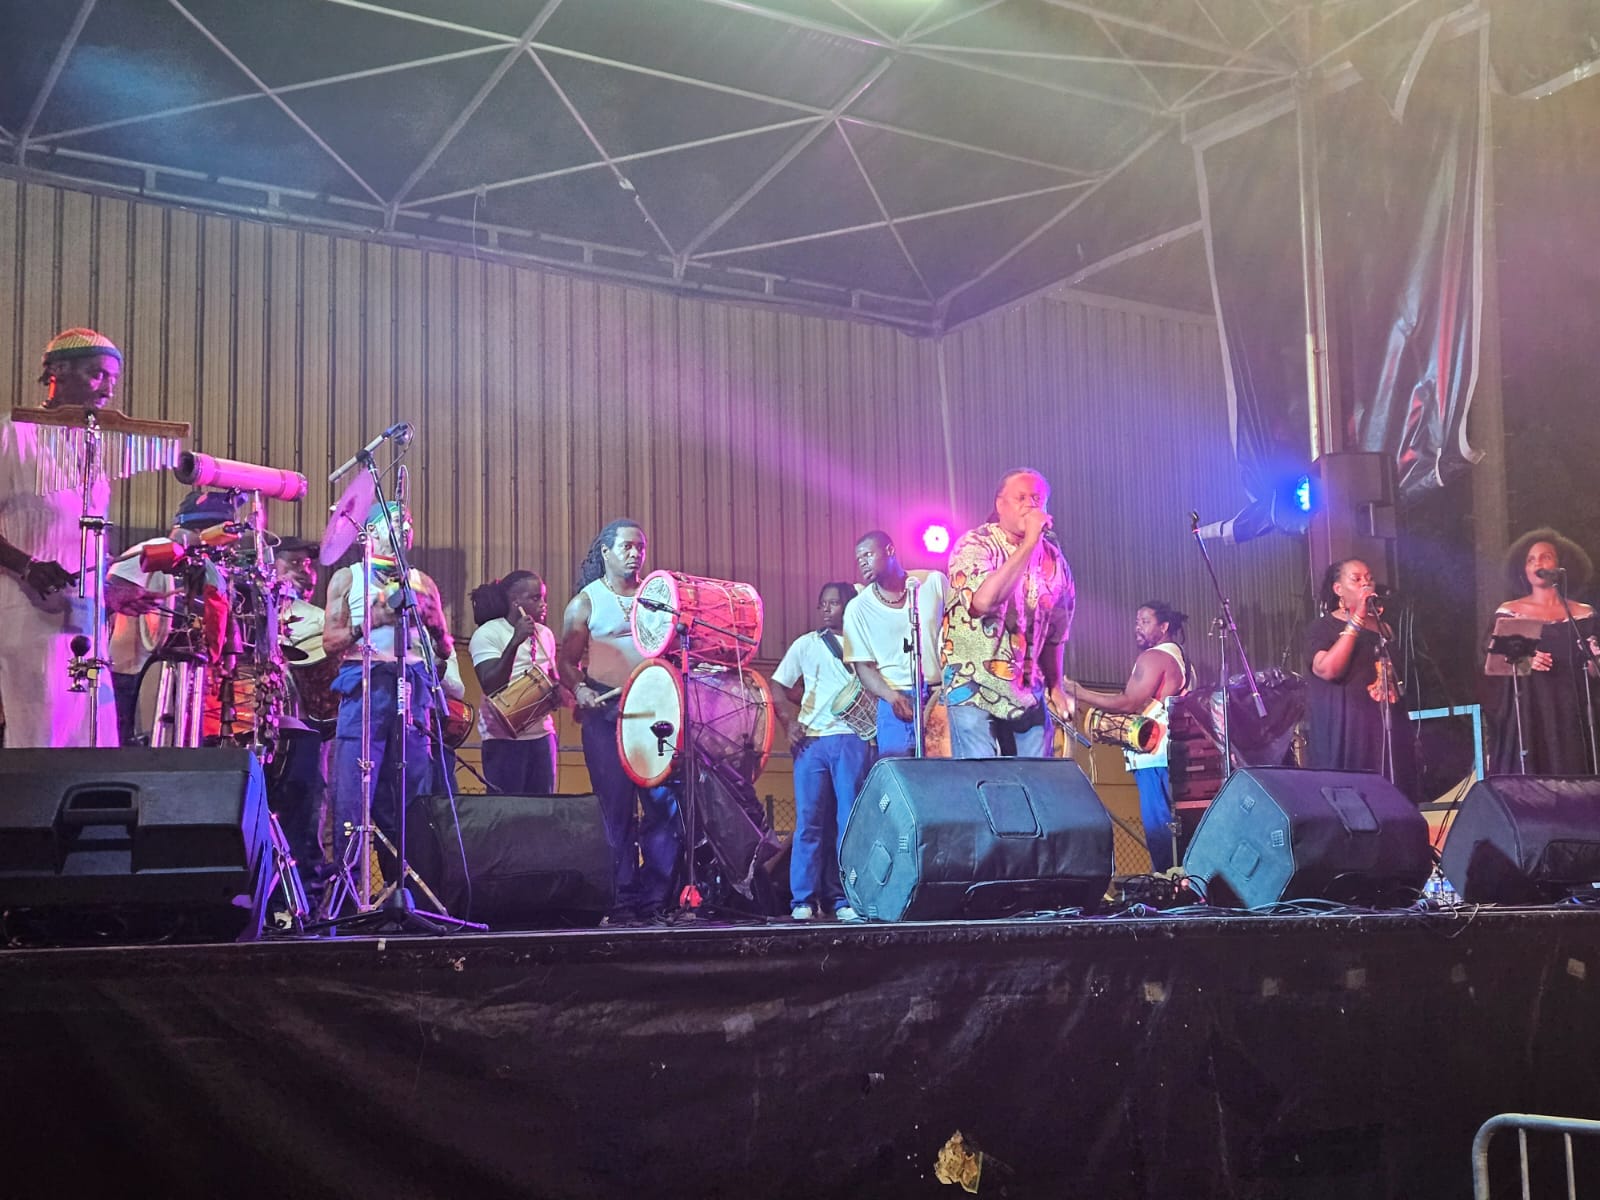     Nouvel élan de solidarité en musique pour les sinistrés de la rue Raspail

